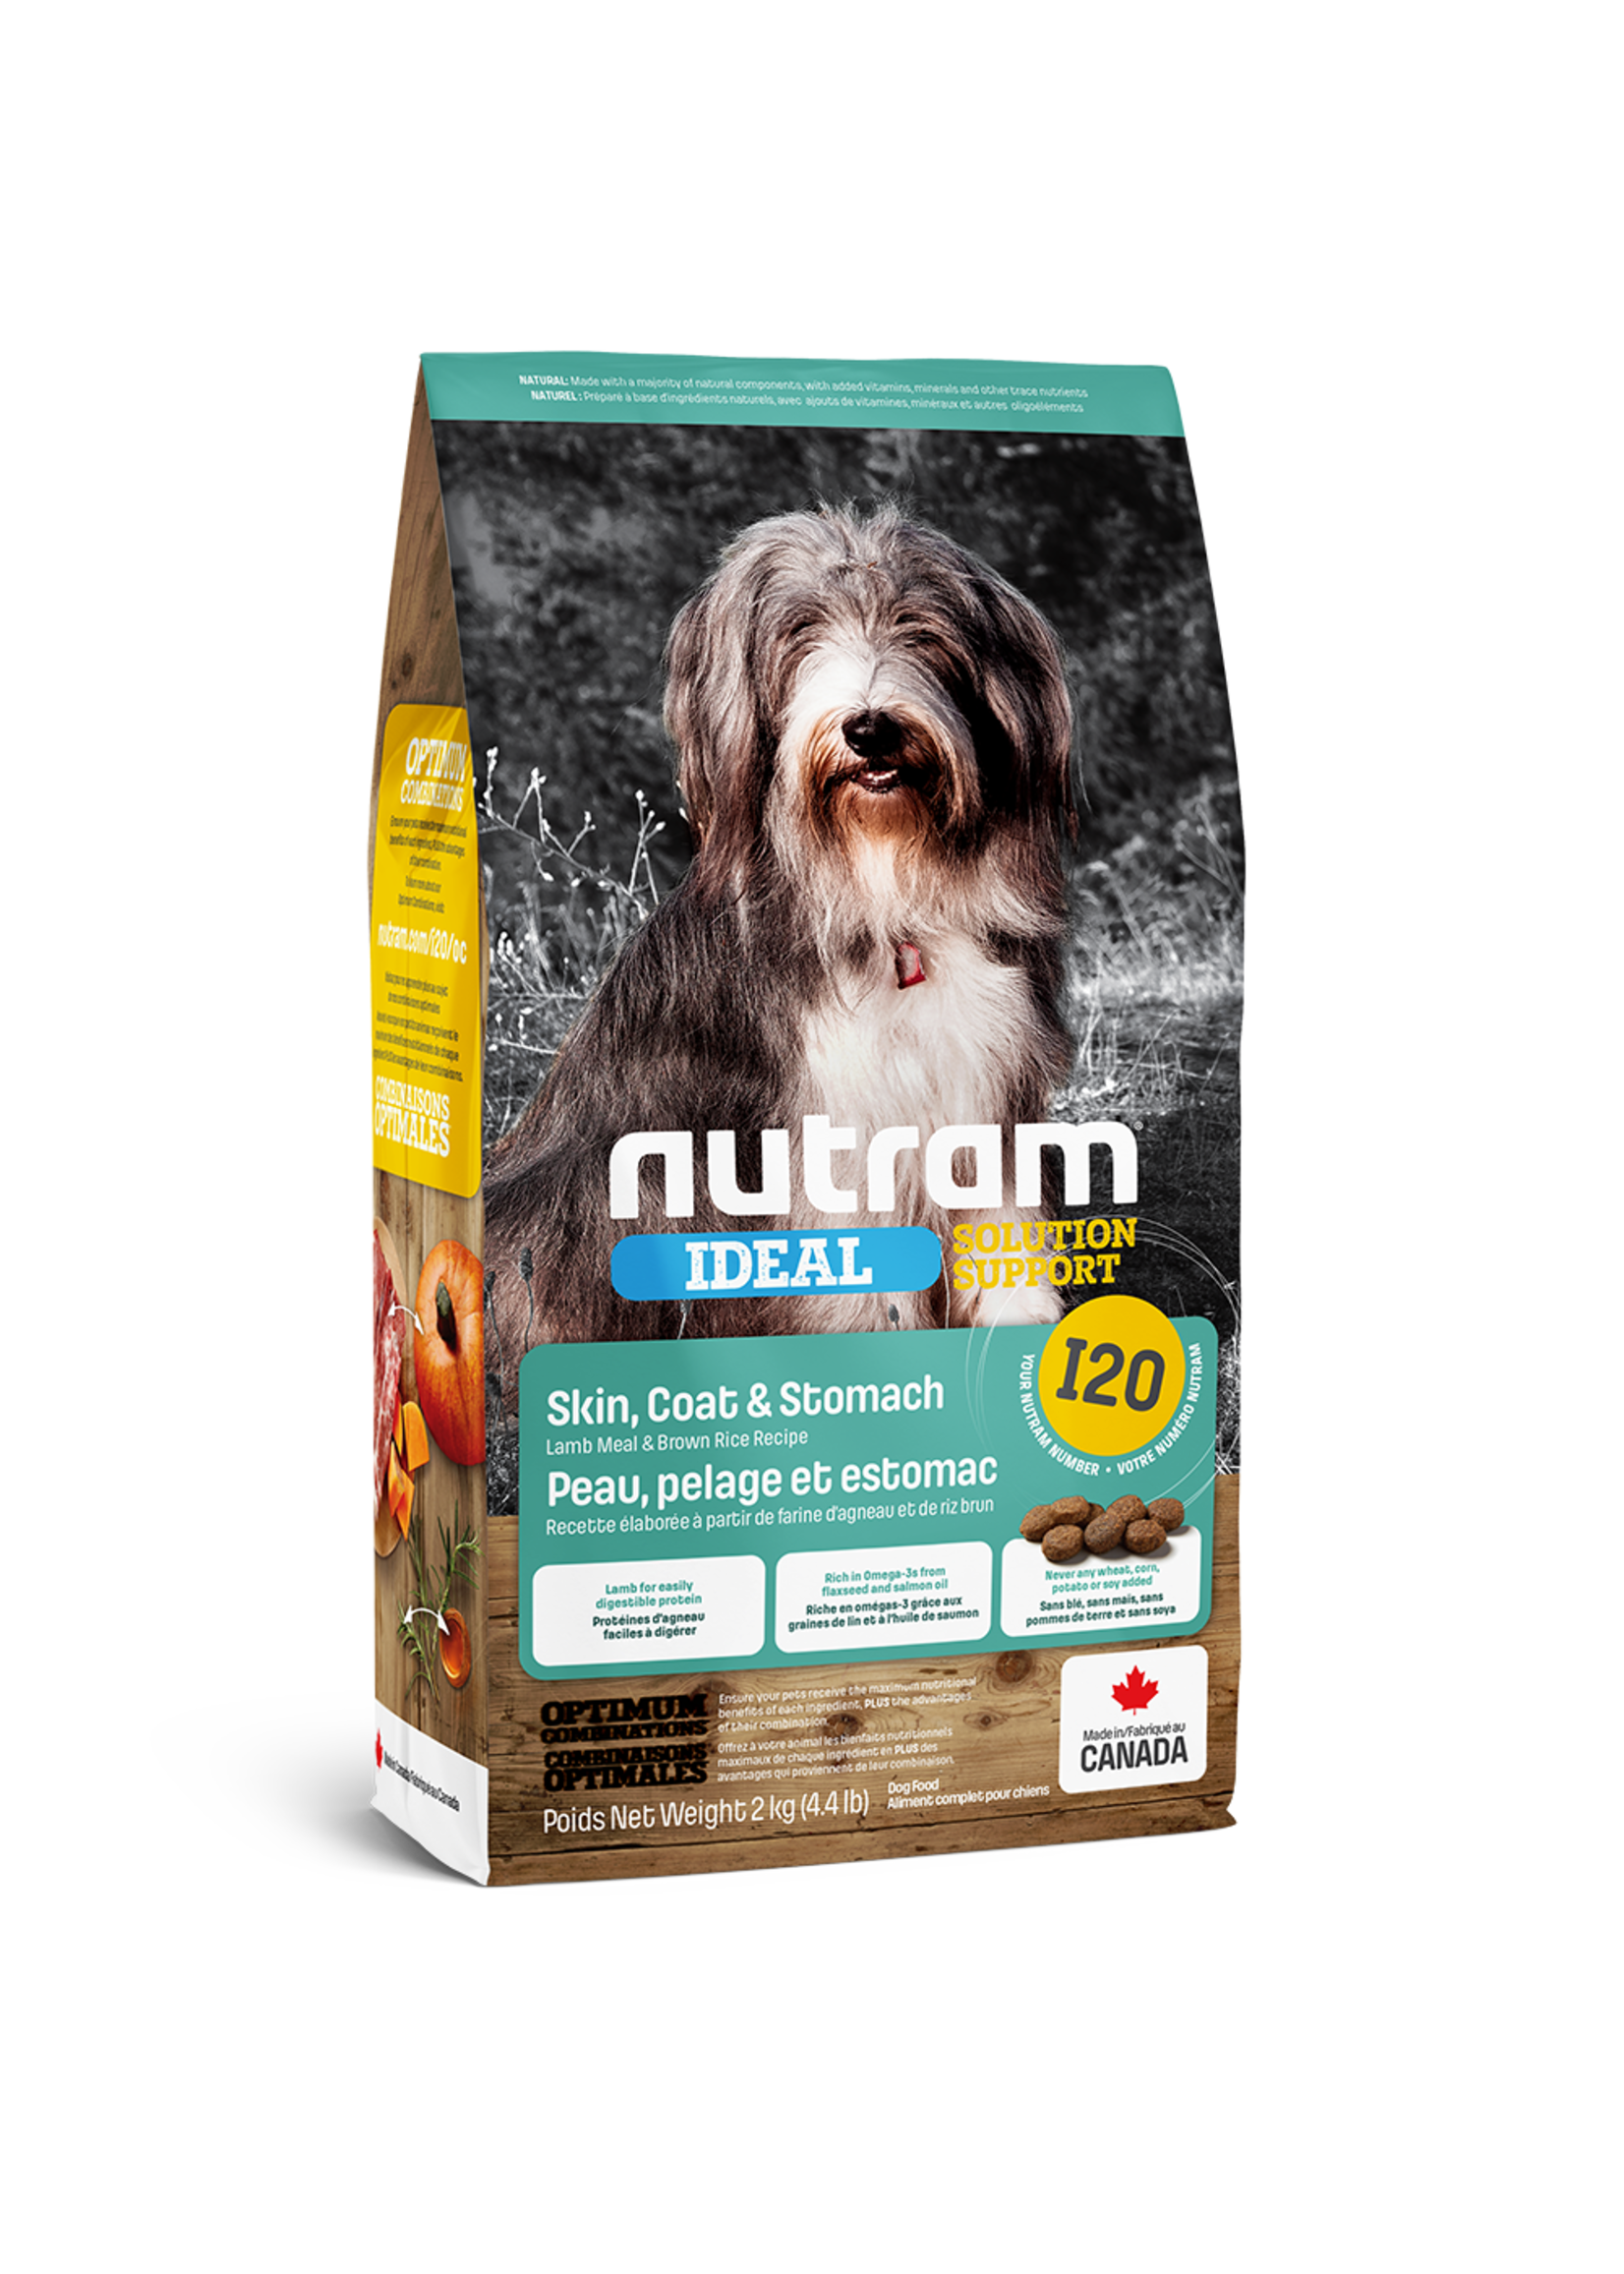 Nutram Nutram 3.0 Ideal Dog I20 Skin Coat & Stomach